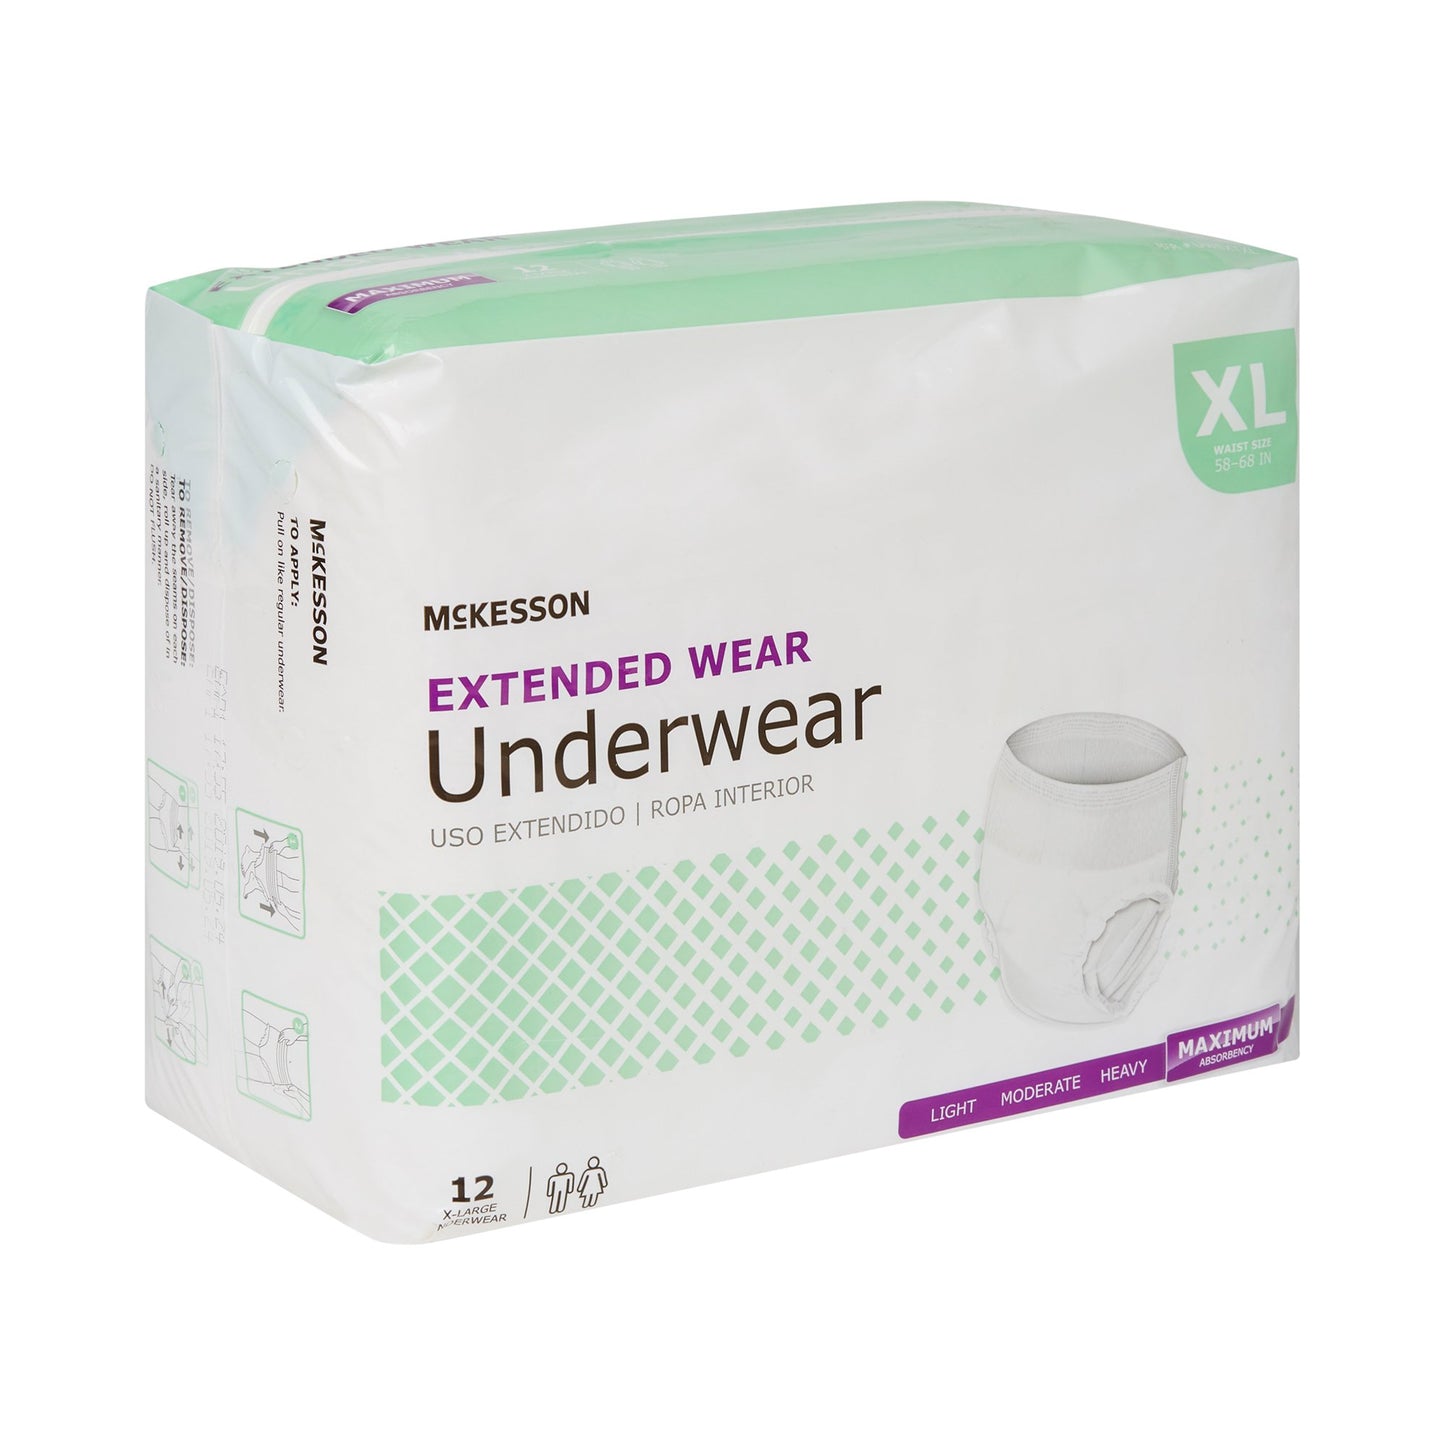 McKesson Extended Wear Maximum Absorbent Underwear, XL, 12 ct